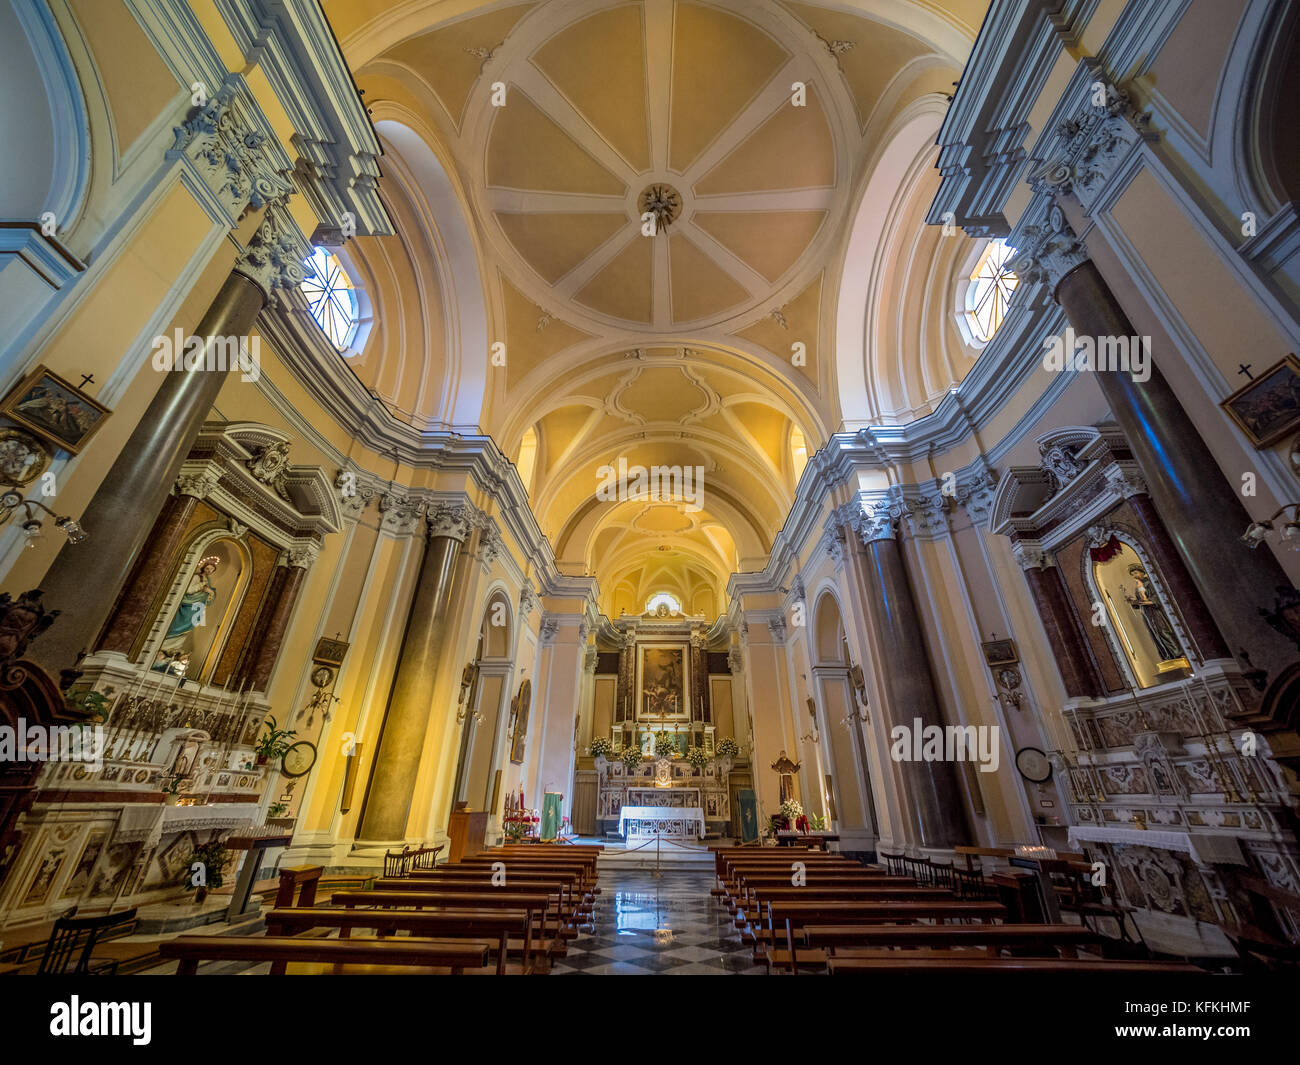 Interior of Convento San Francesco, Sorrento, Italy.   Convento San Francesco, Sorrento, Italy. Stock Photo